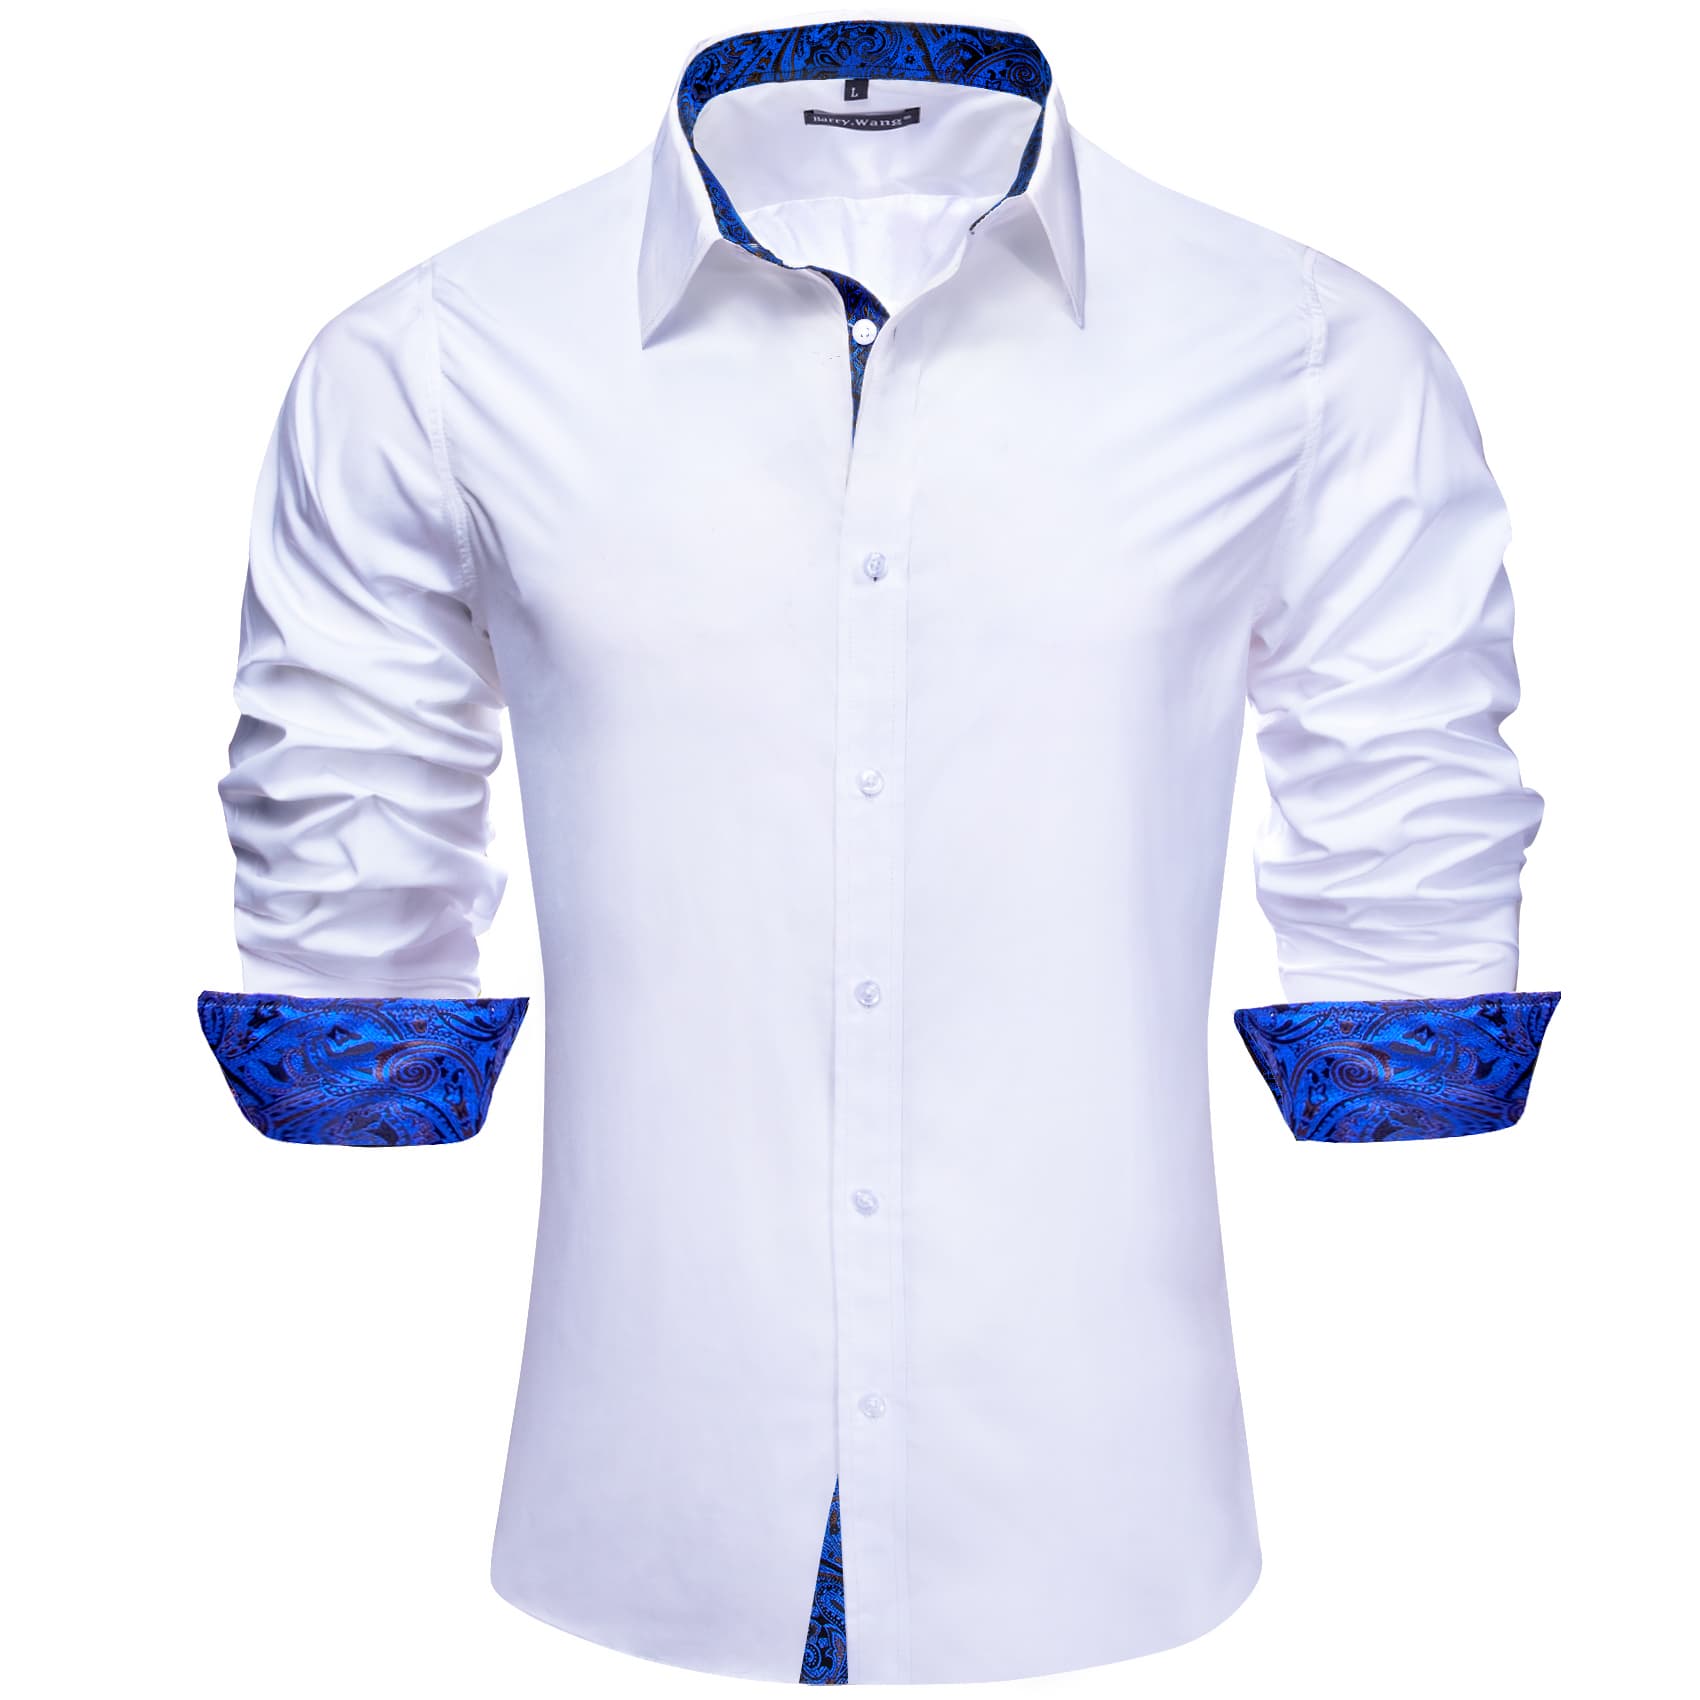 Barry Wang White Dress Shirt Blue Paisley Cuff Patchwork Shirt for Men